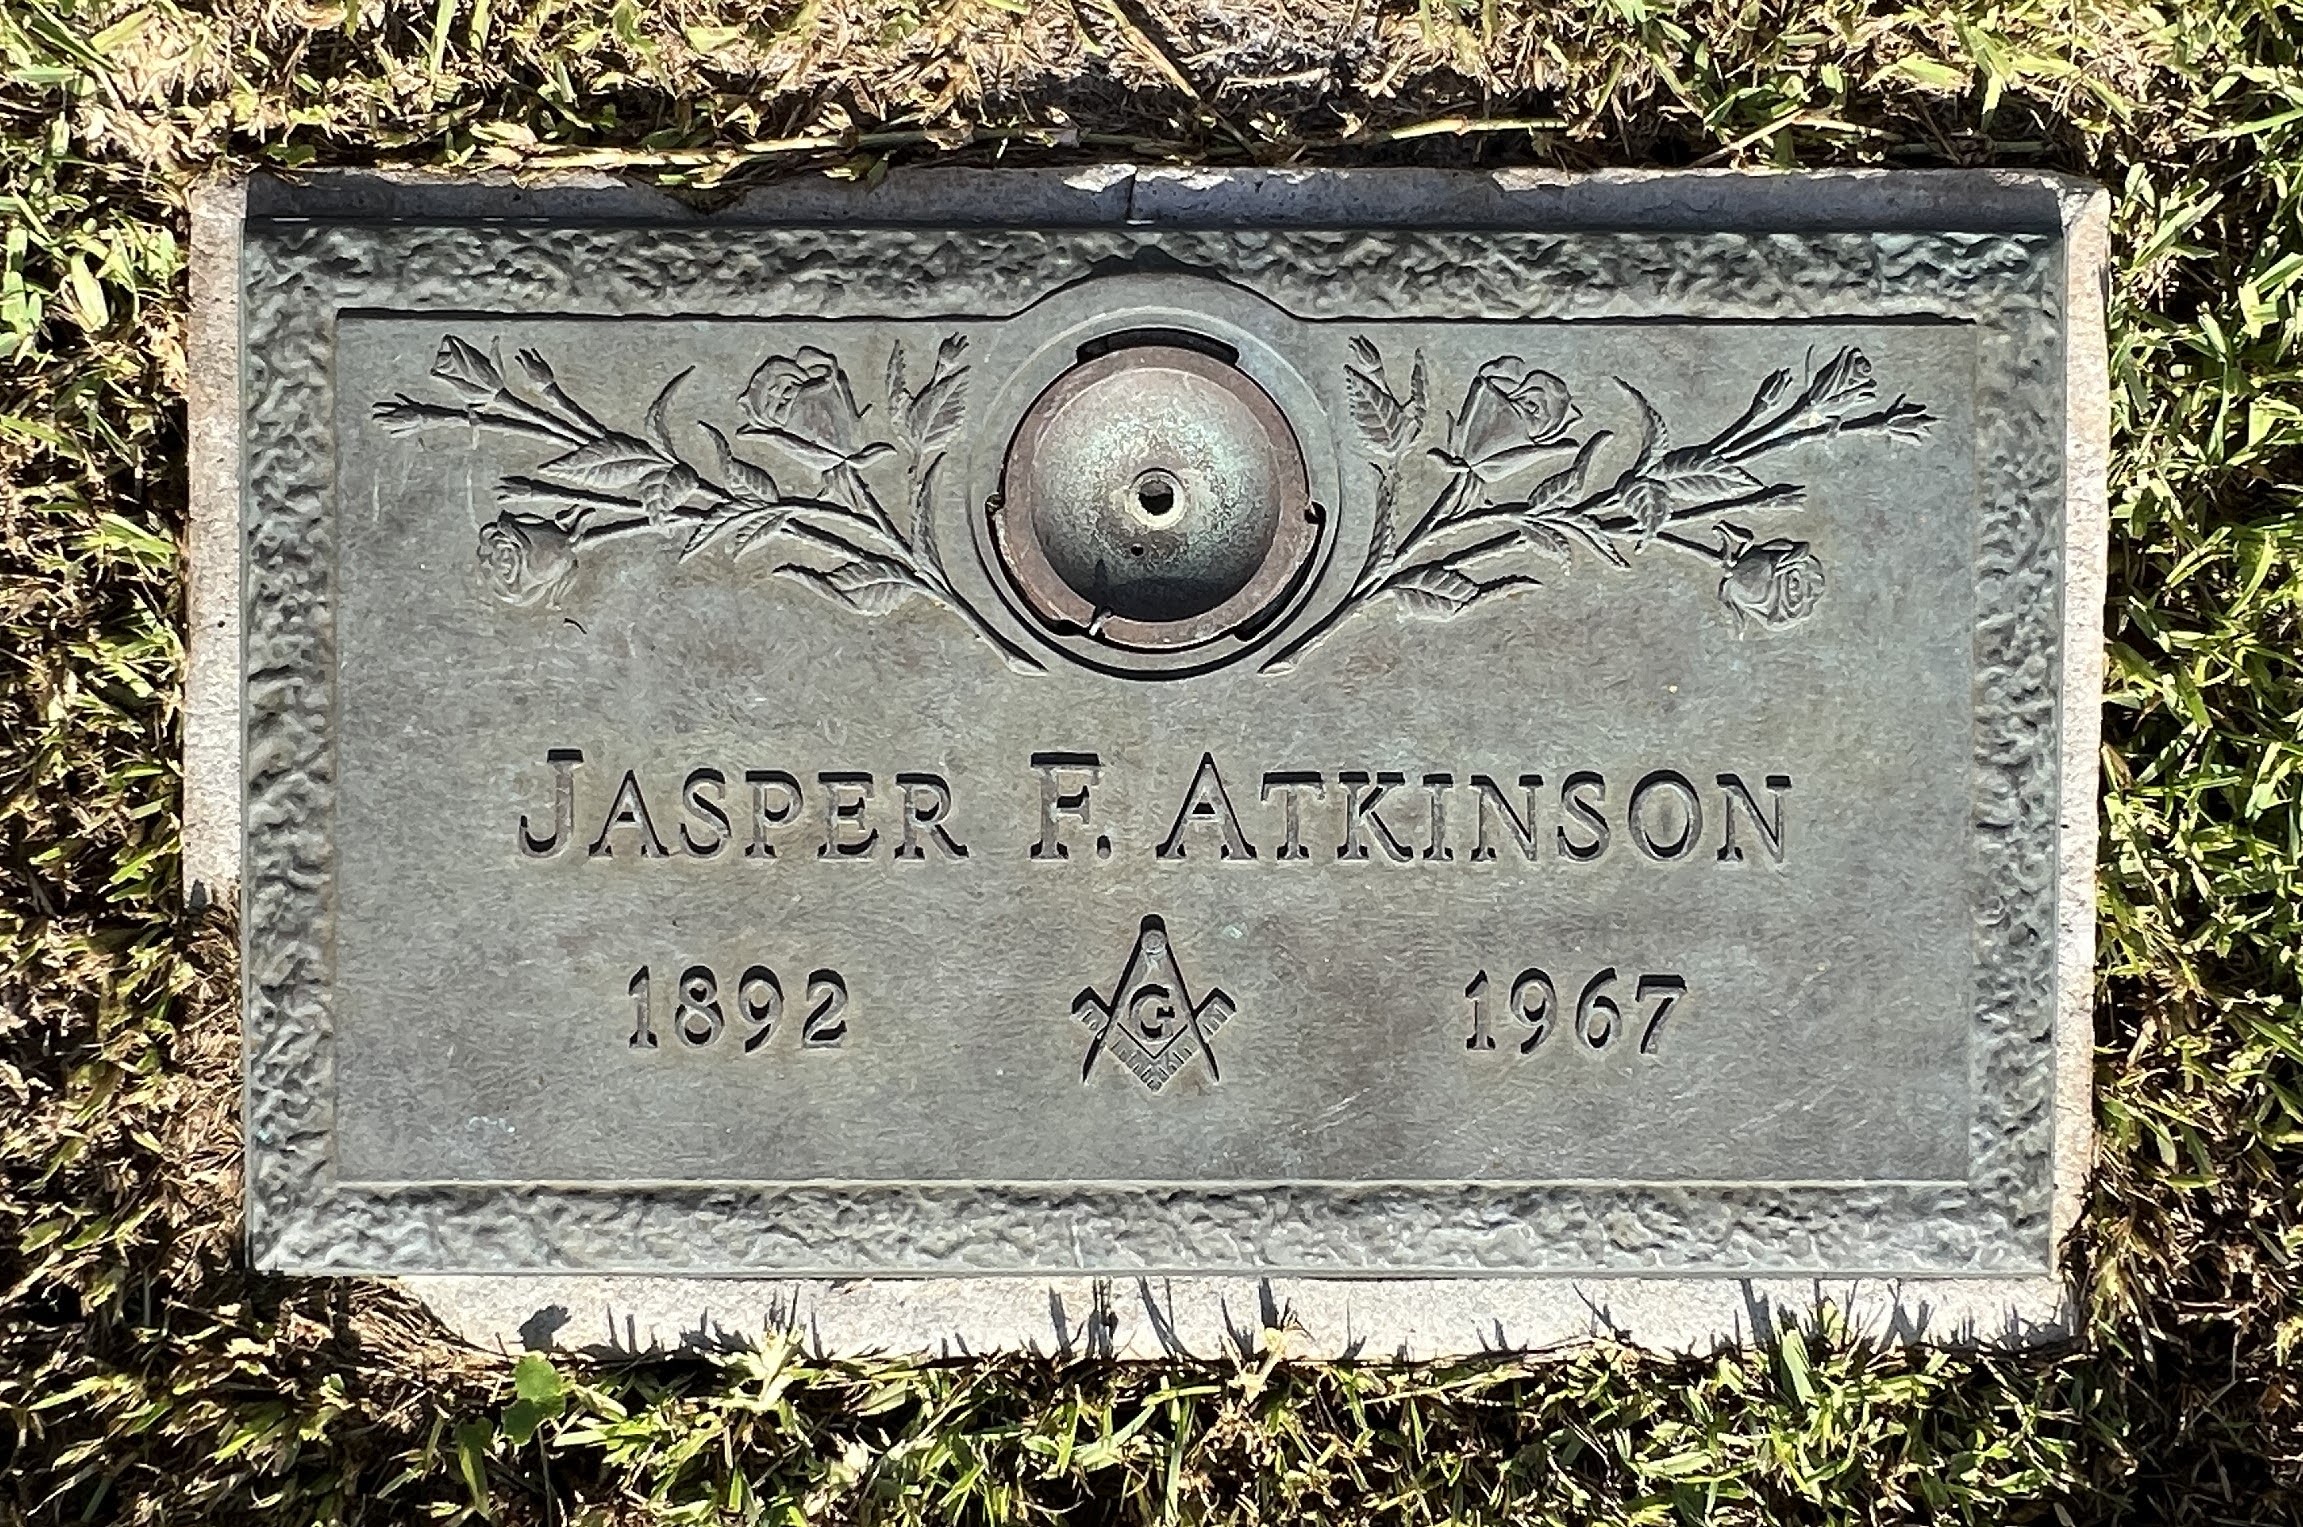 Jasper F Atkinson